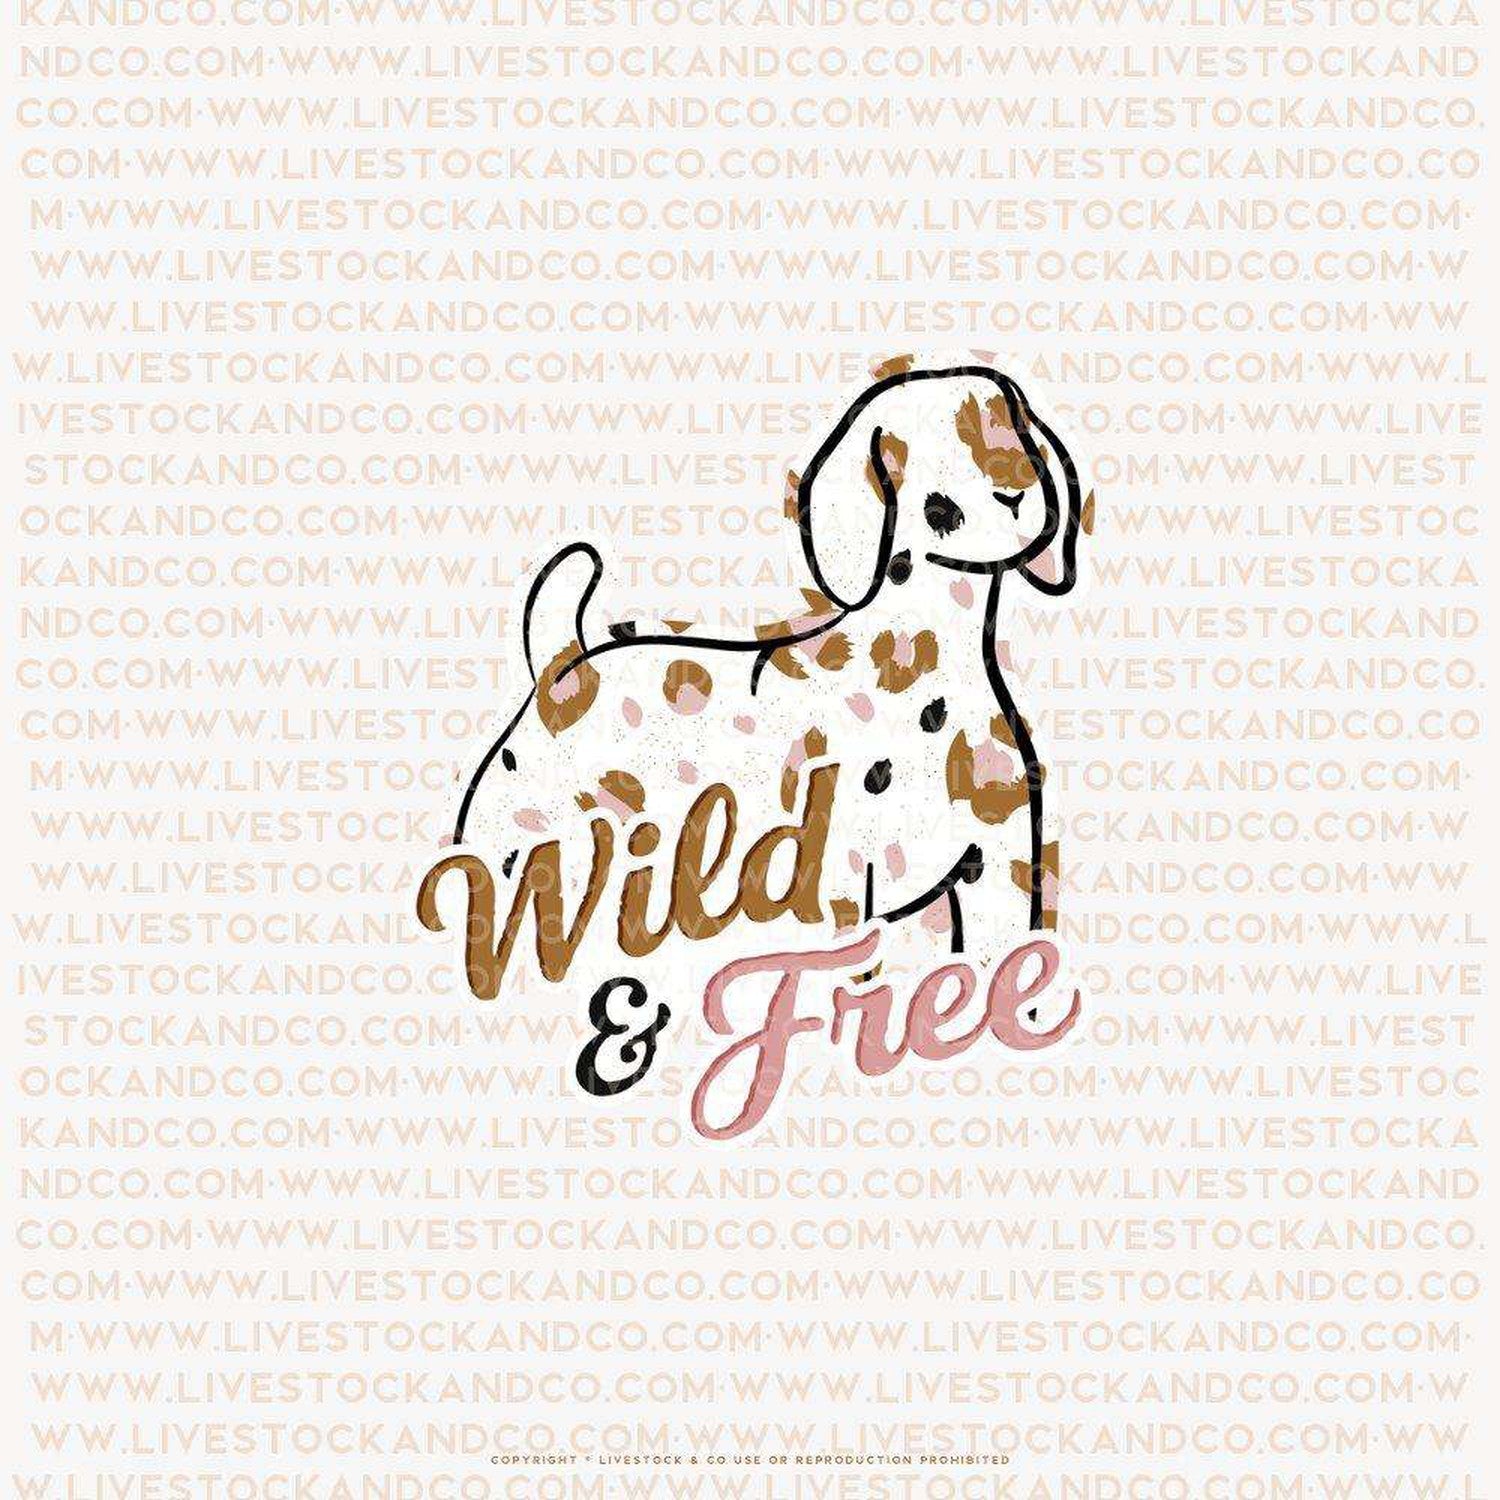 Custom Made Wild & Free Livestock Stickers Stock Show Livestock - Livestock &amp; Co. Boutique